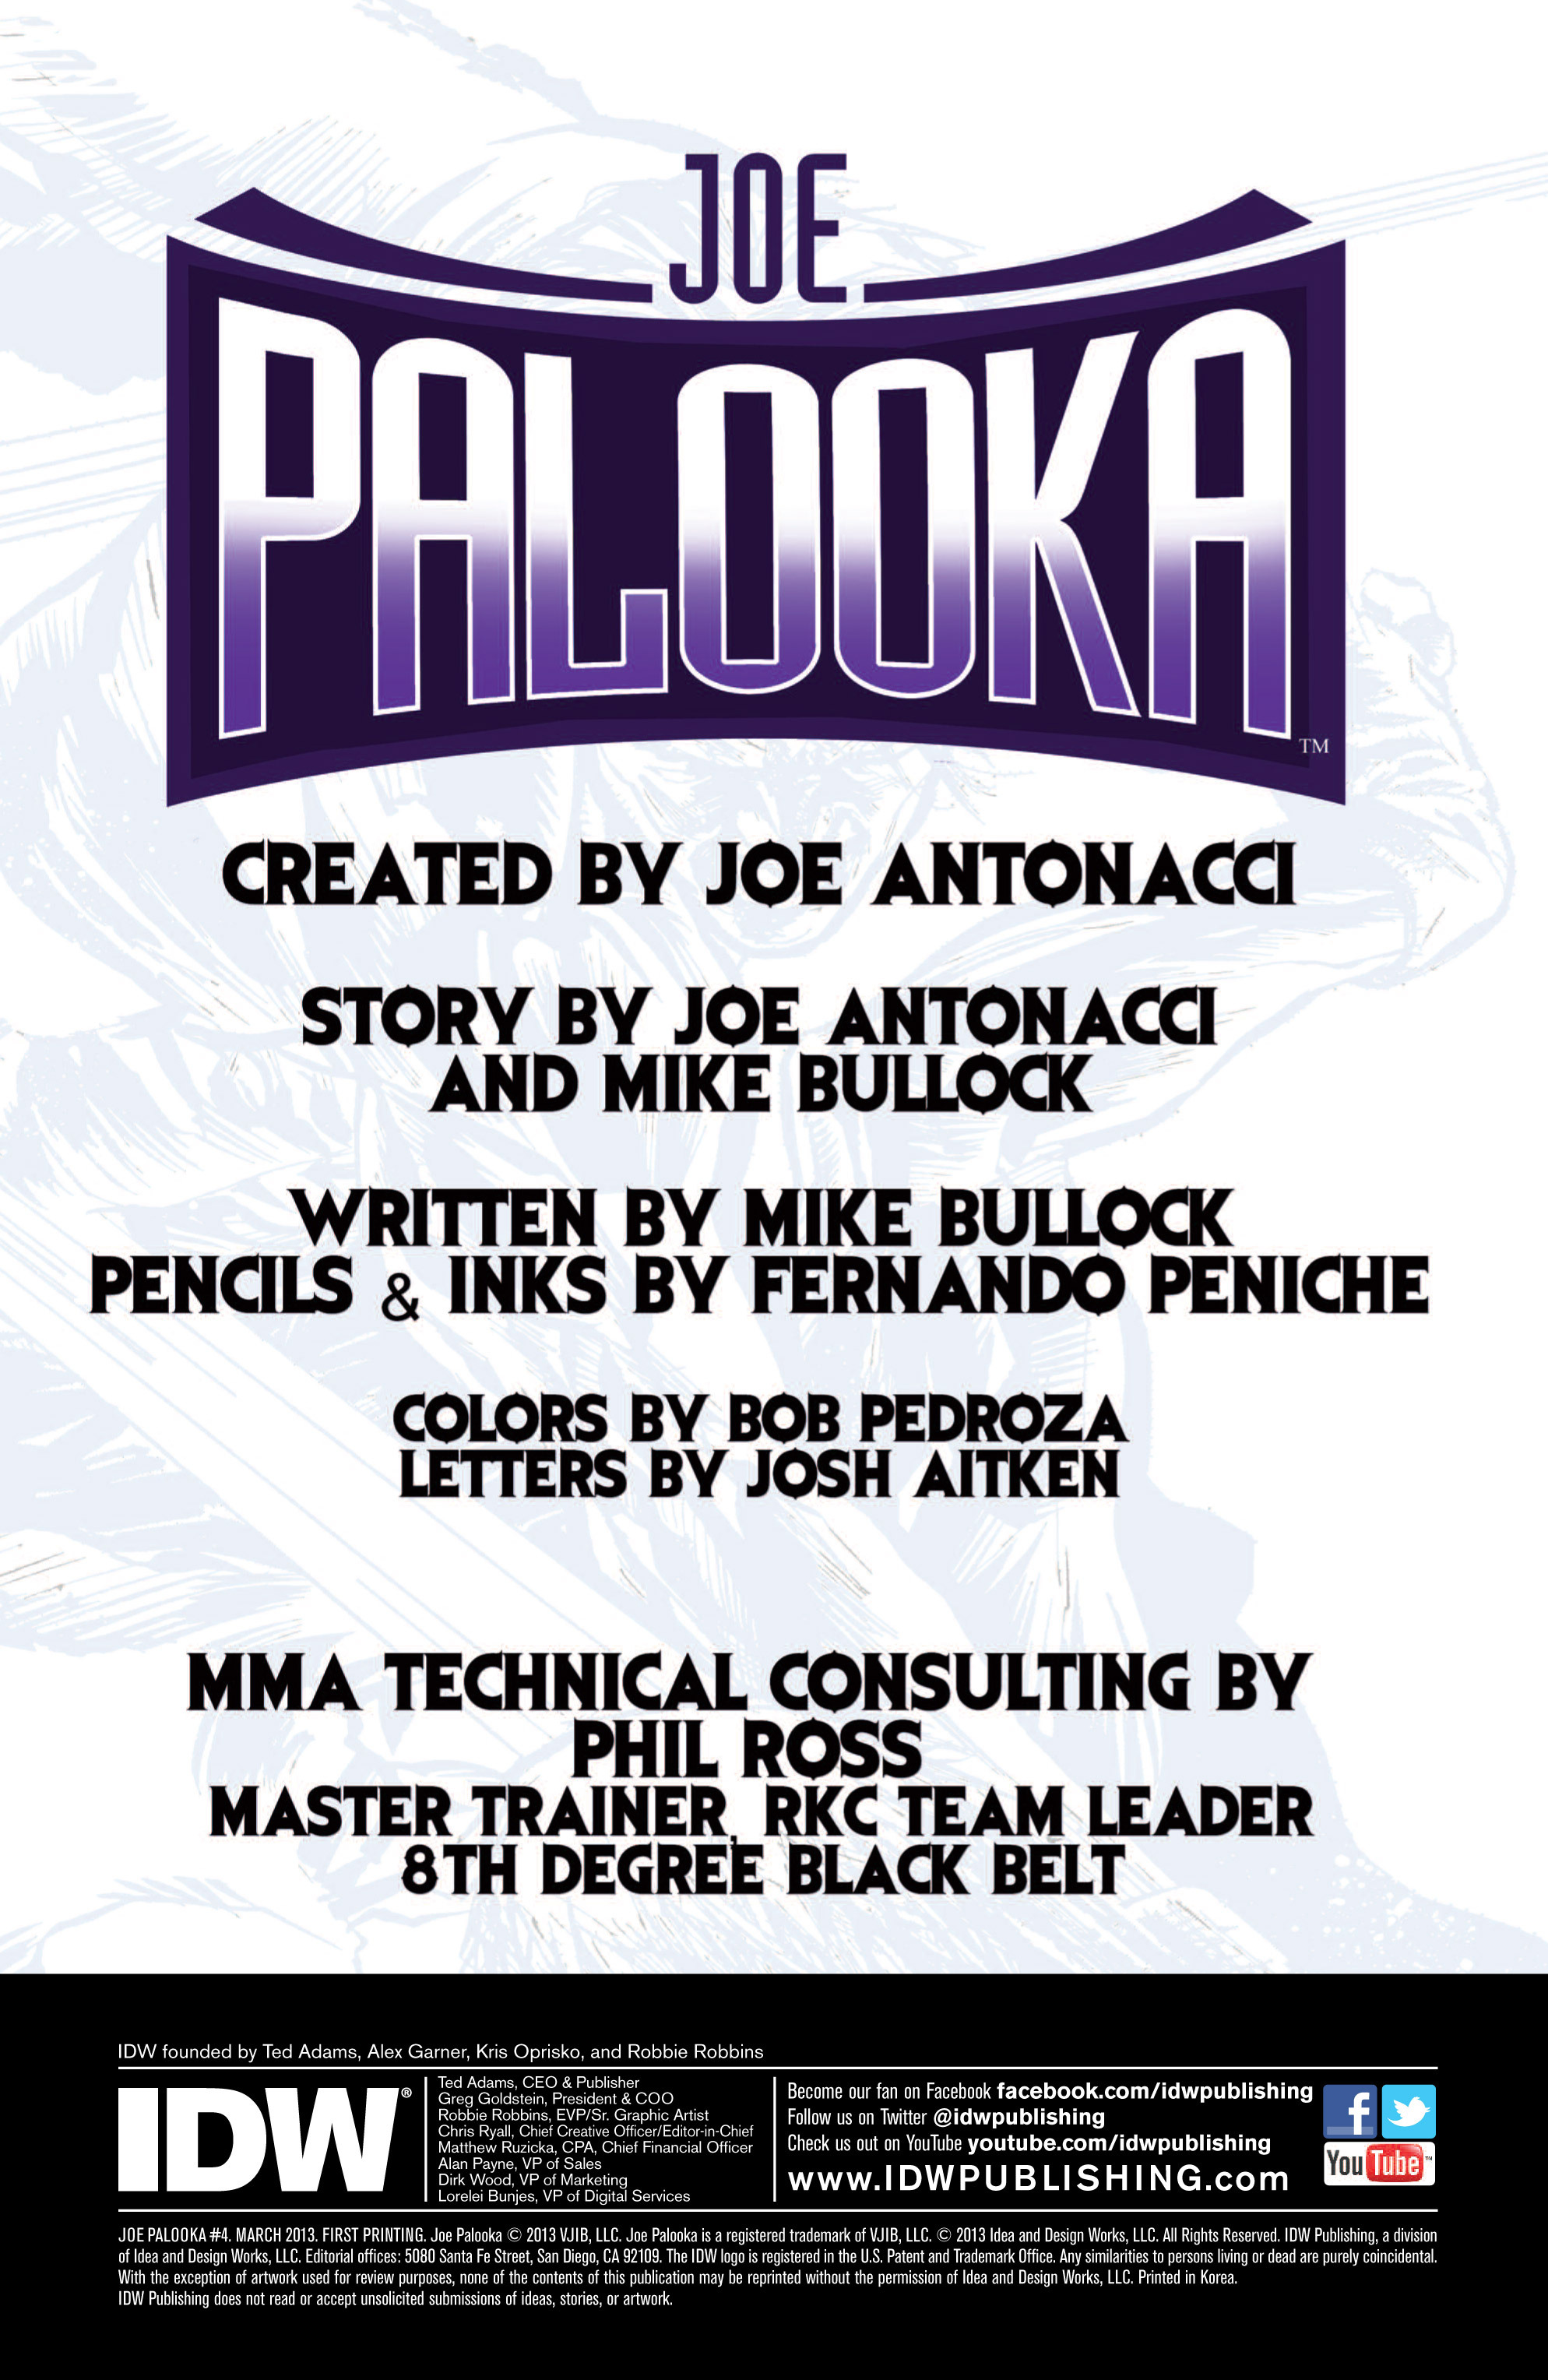 Read online Joe Palooka comic -  Issue #4 - 2